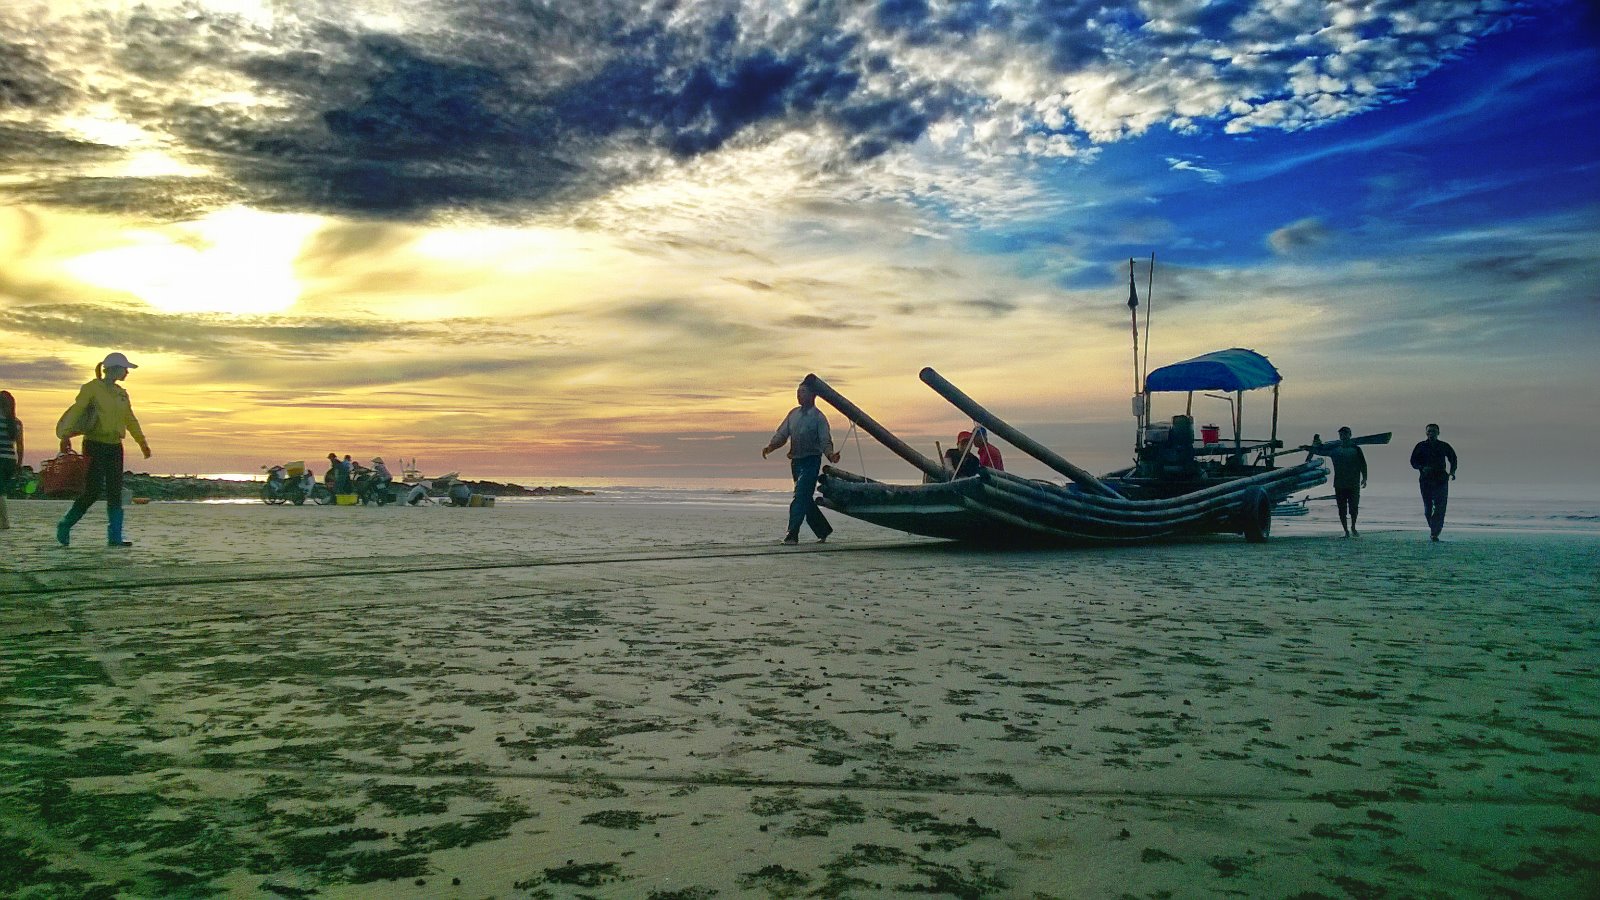 Du lịch Nam Định bạn nhất định phải ghé qua những bãi biển này